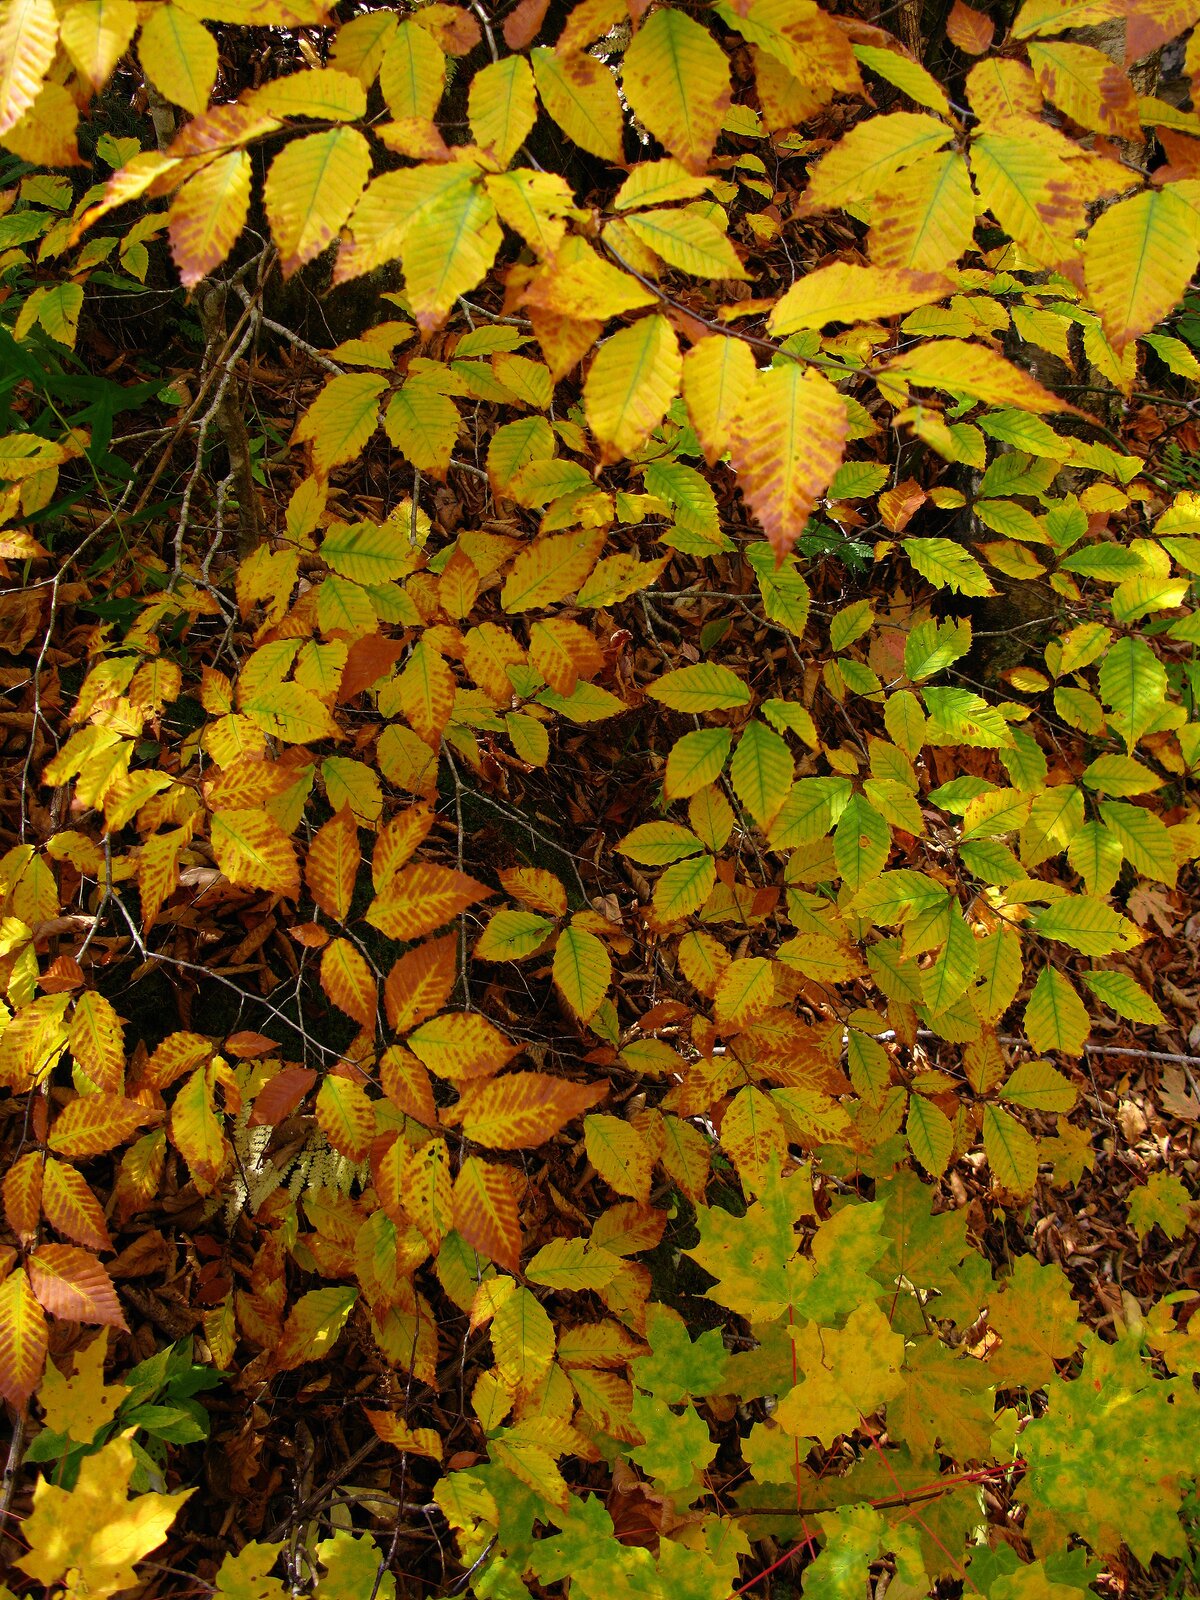 Fotografia przedstawia pożółkłe liście drzewa.